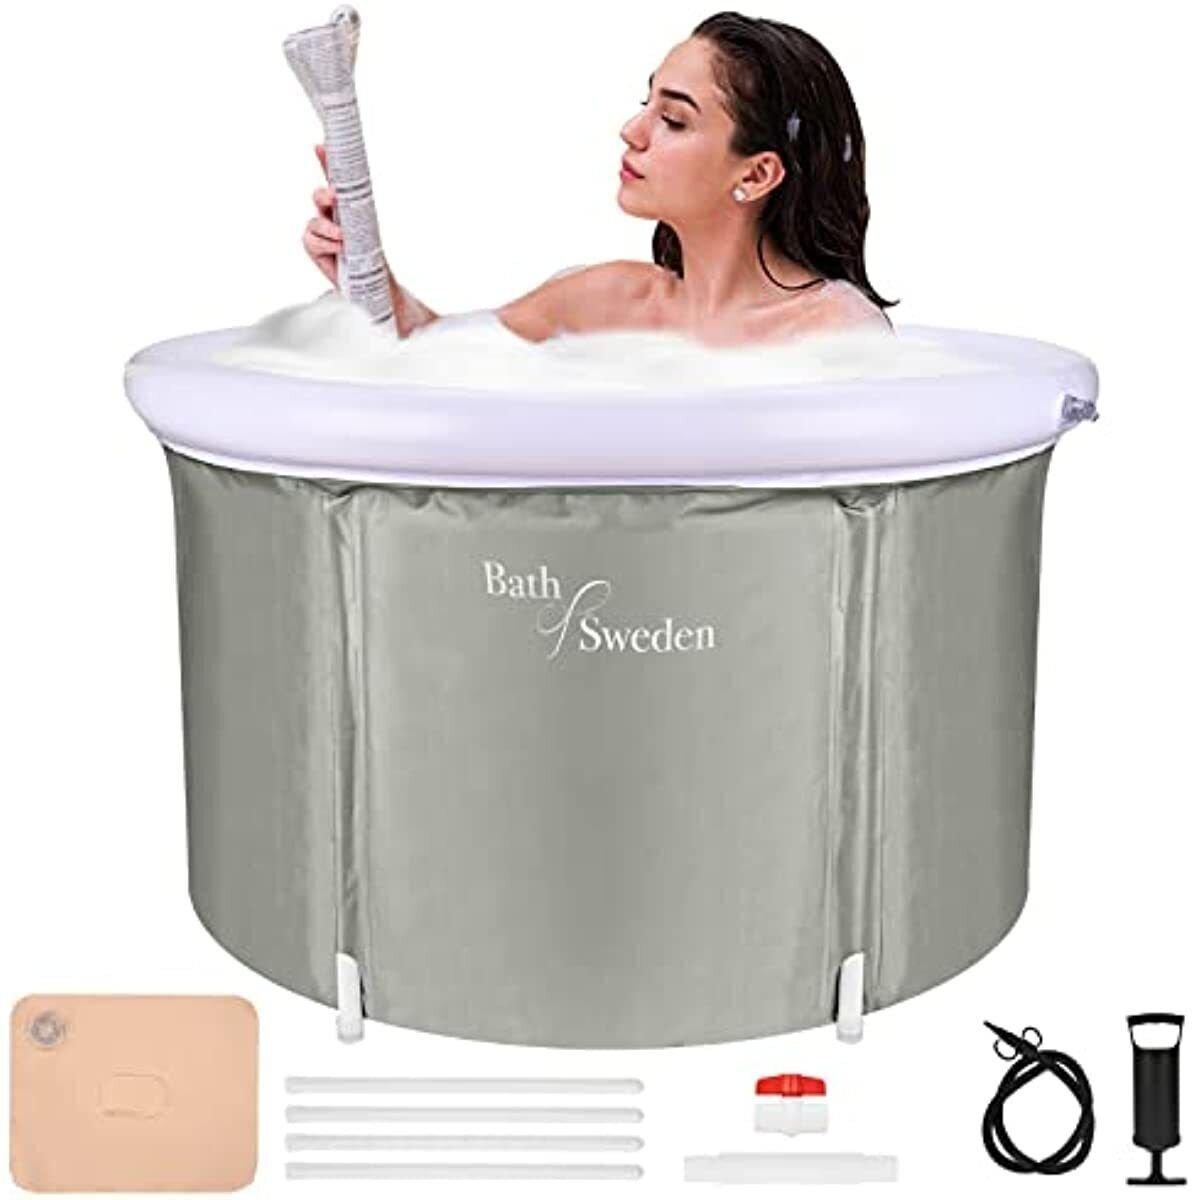 Easy Foldable Bathtub Body SPA and Ice Bath Sturdy Bubble Bathtub 90*65cm